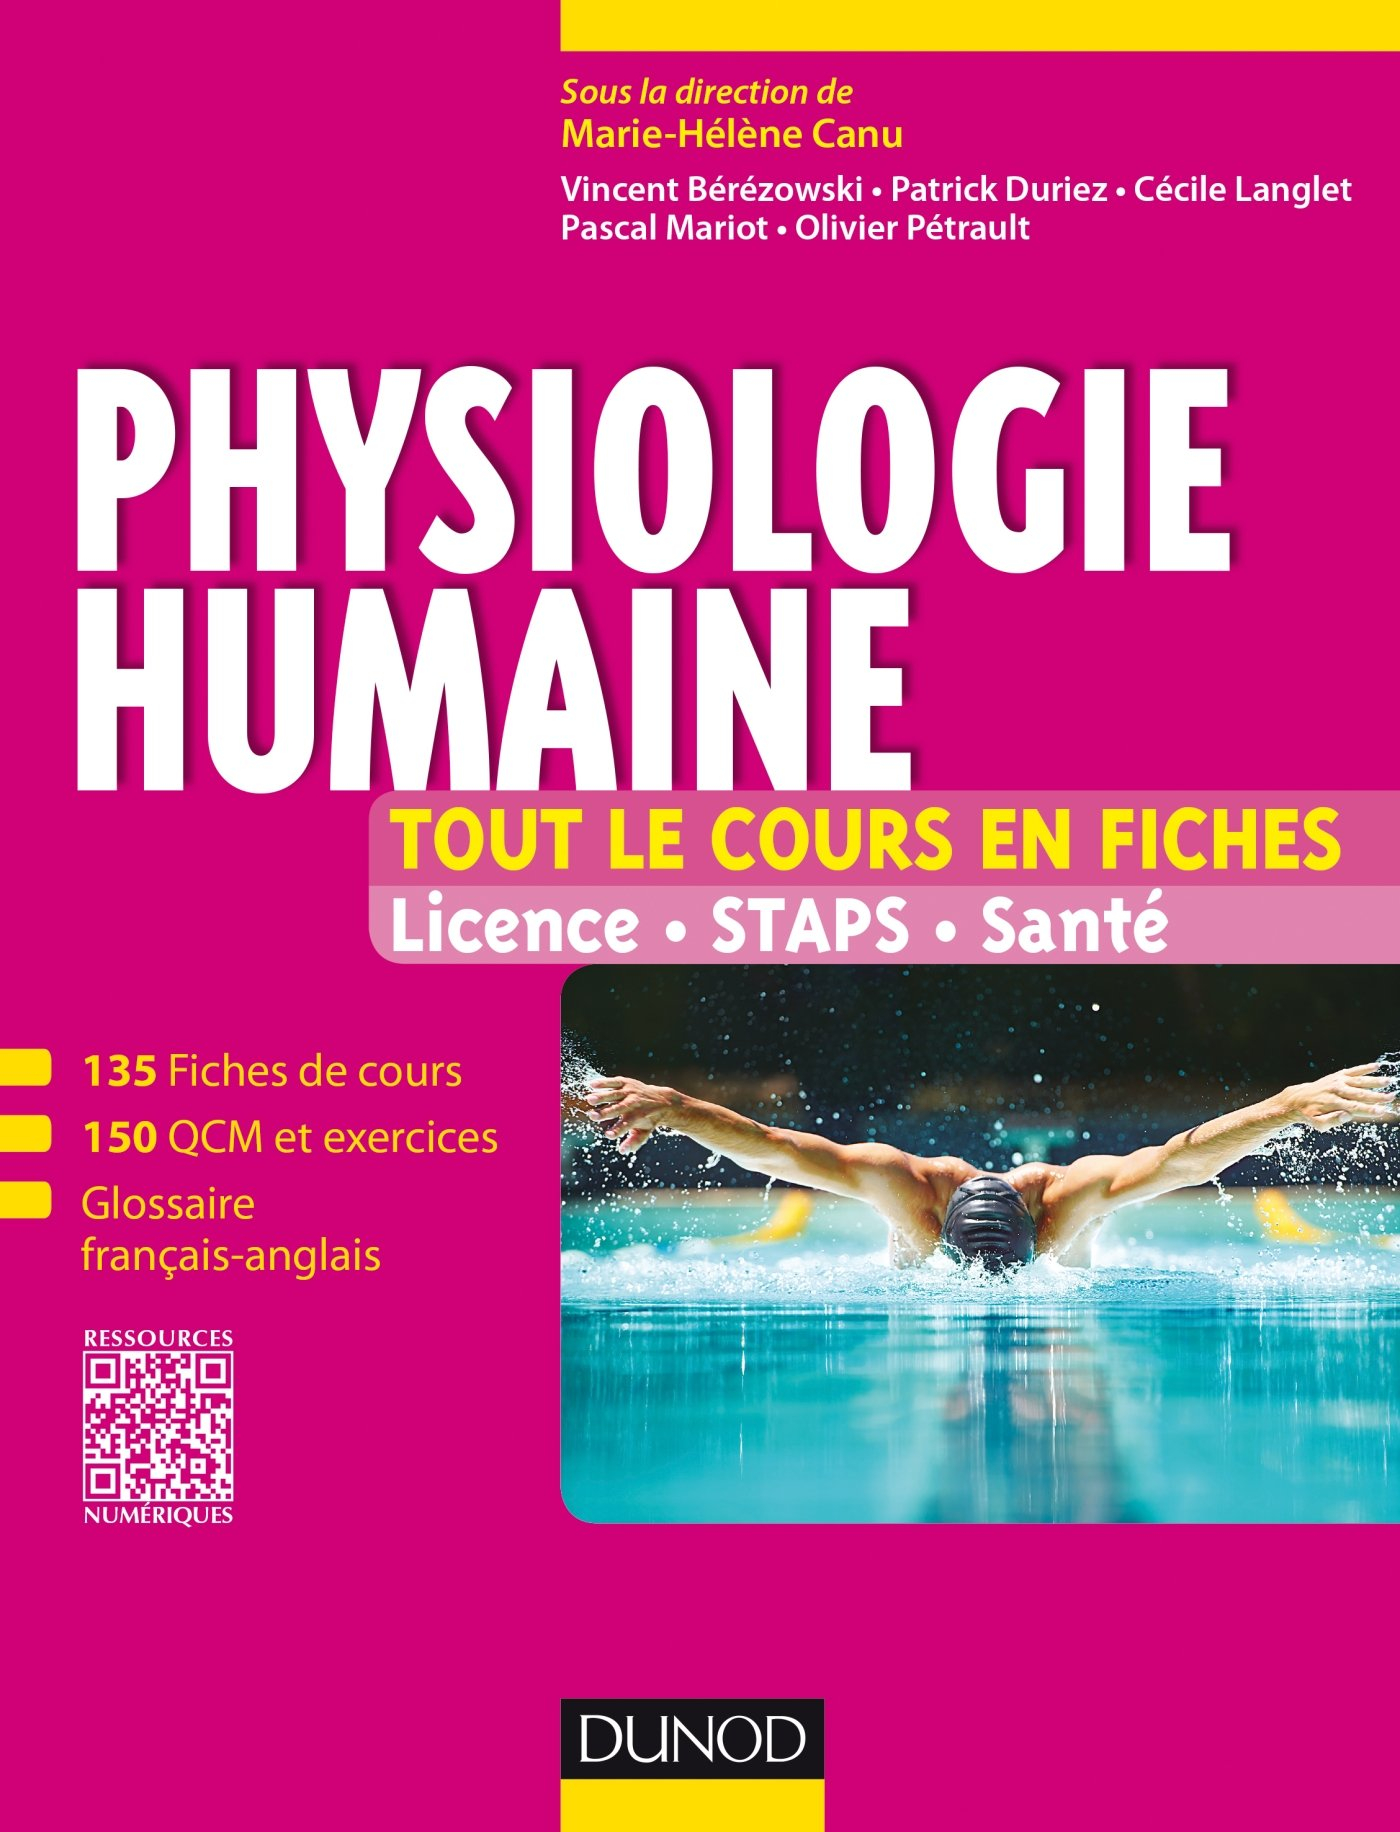 Physiologie humaine : licence, STAPS, santé : 135 fiches de cours, 150 QCM et exercices, glossaire f